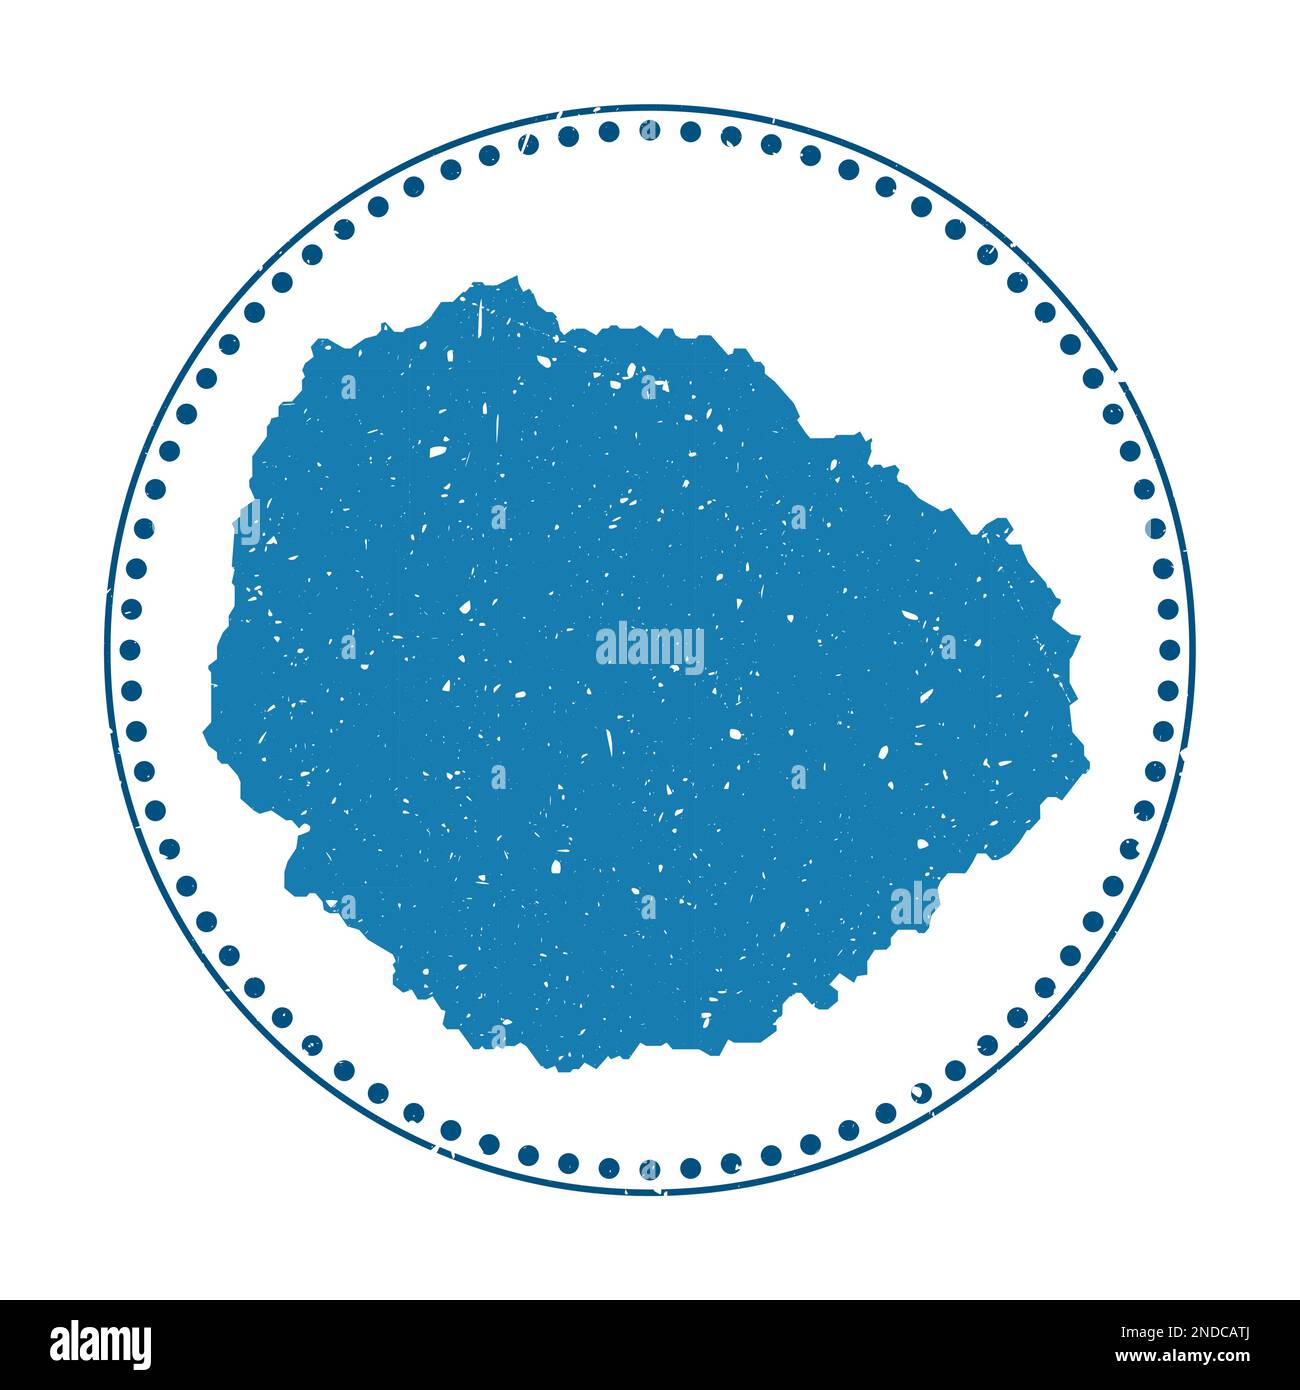 Aufkleber La Gomera. Reise-Stempel mit Karte der Insel, Vektordarstellung. Kann als Abzeichen, Logo, Label, Aufkleber oder Abzeichen des La G verwendet werden Stock Vektor